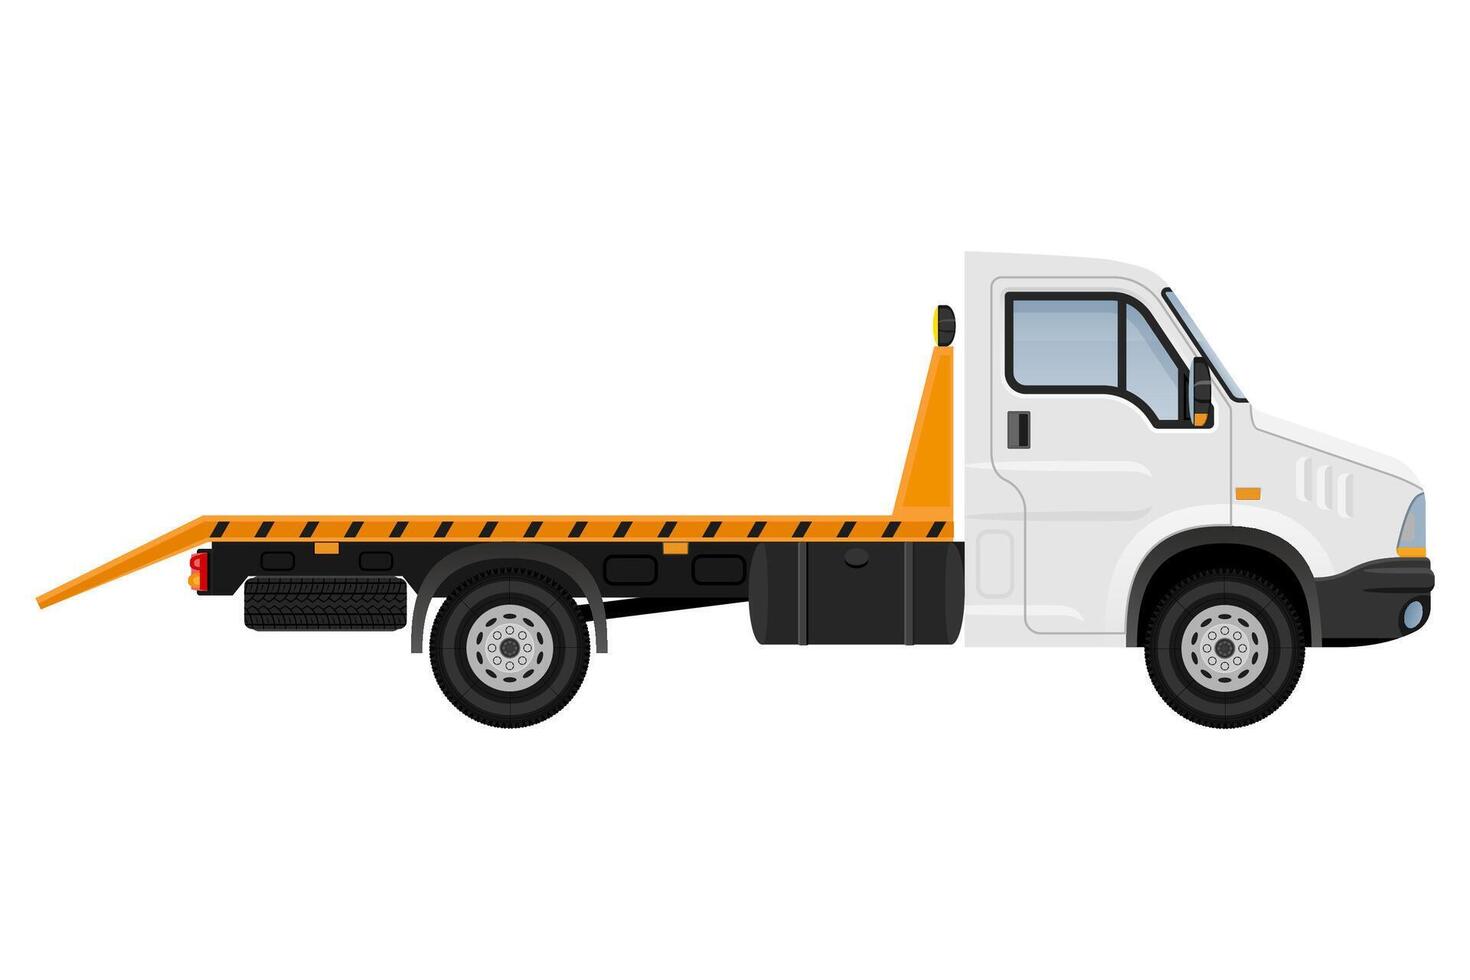 kleine vrachtwagen van vrachtwagen voor het vervoer van vrachtgoederen voorraad vectorillustratie geïsoleerd op een witte achtergrond vector